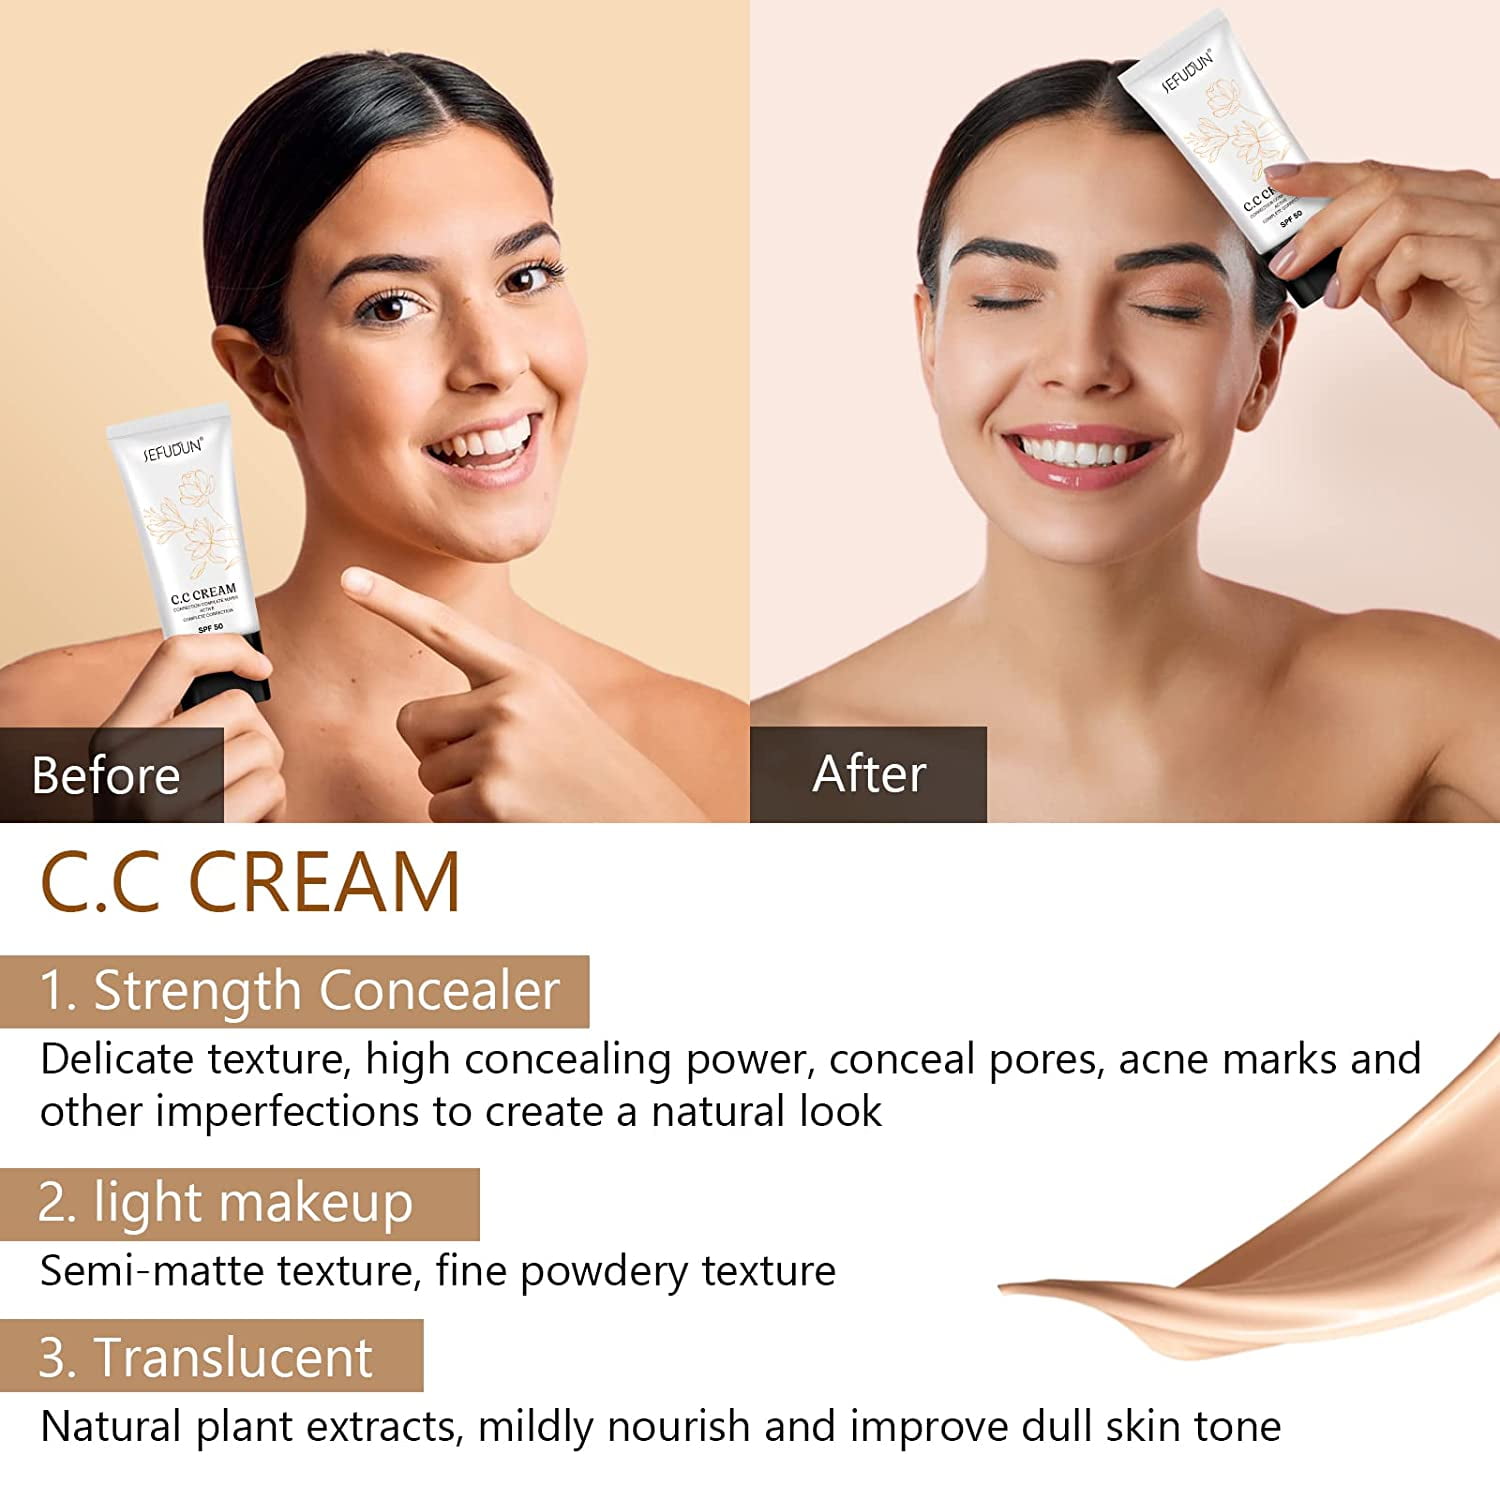 Skin Tone Adjusting CC Cream SPF 43, Colour Correcting Self Adjusting for Mature  Skin (2 CC CREAMS) 